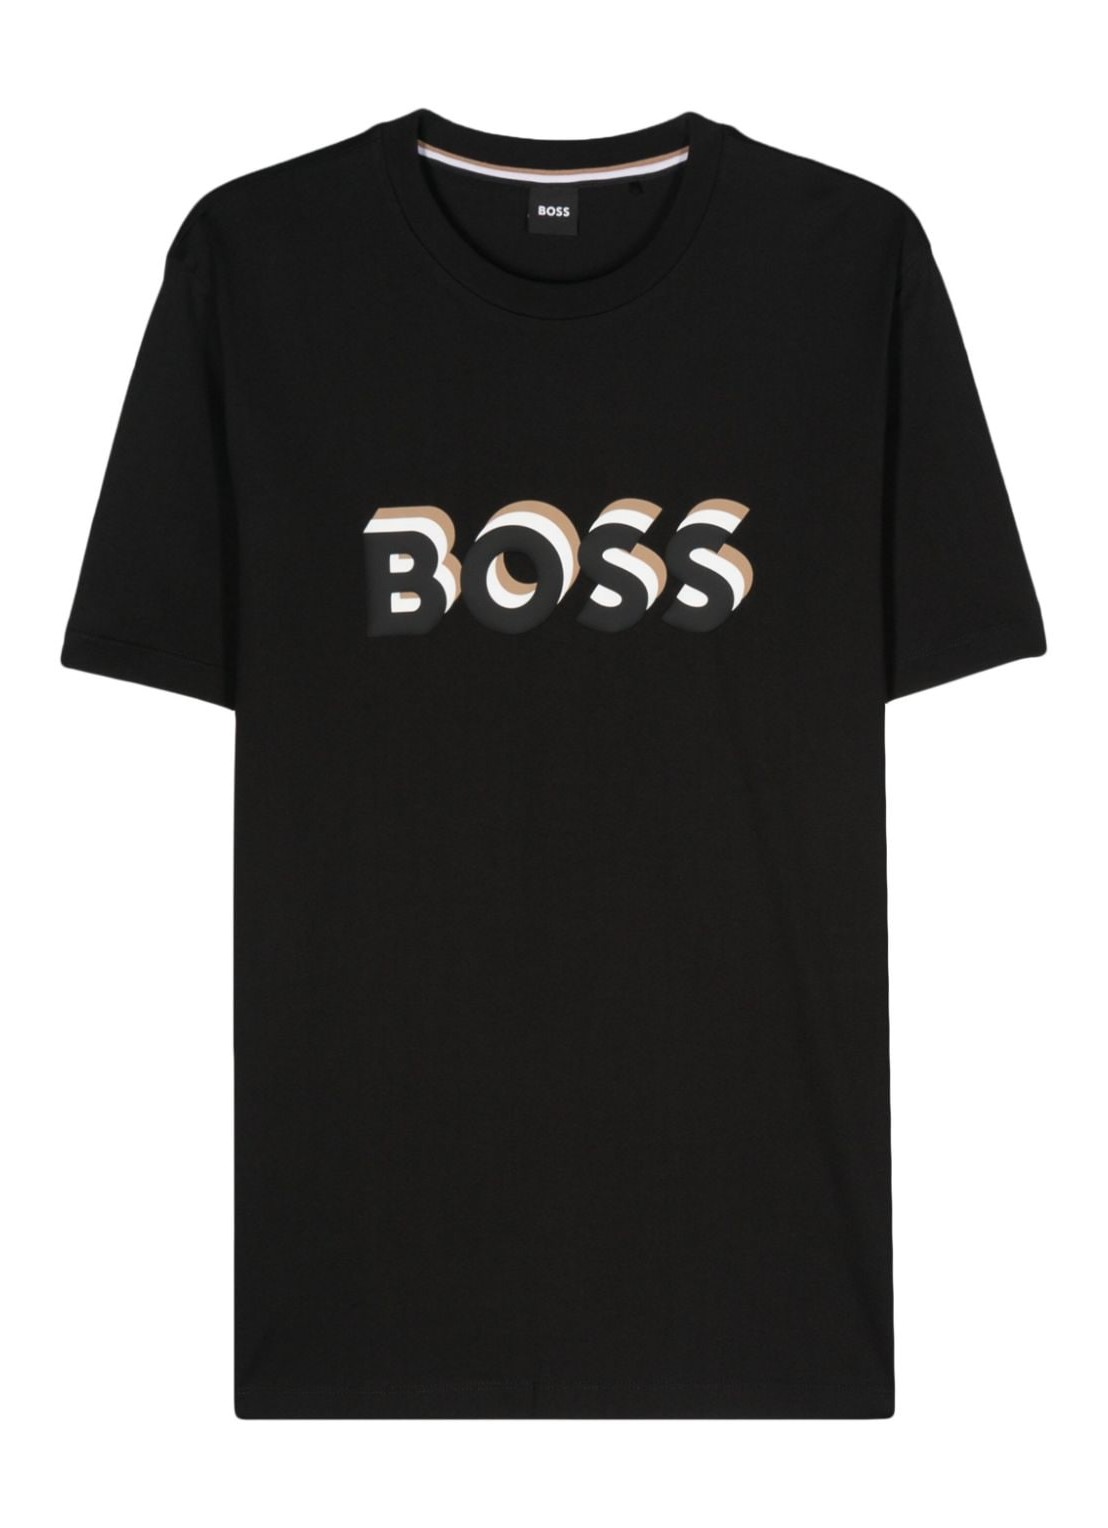 Camiseta boss t-shirt man tiburt 427 50506923 001 talla L
 